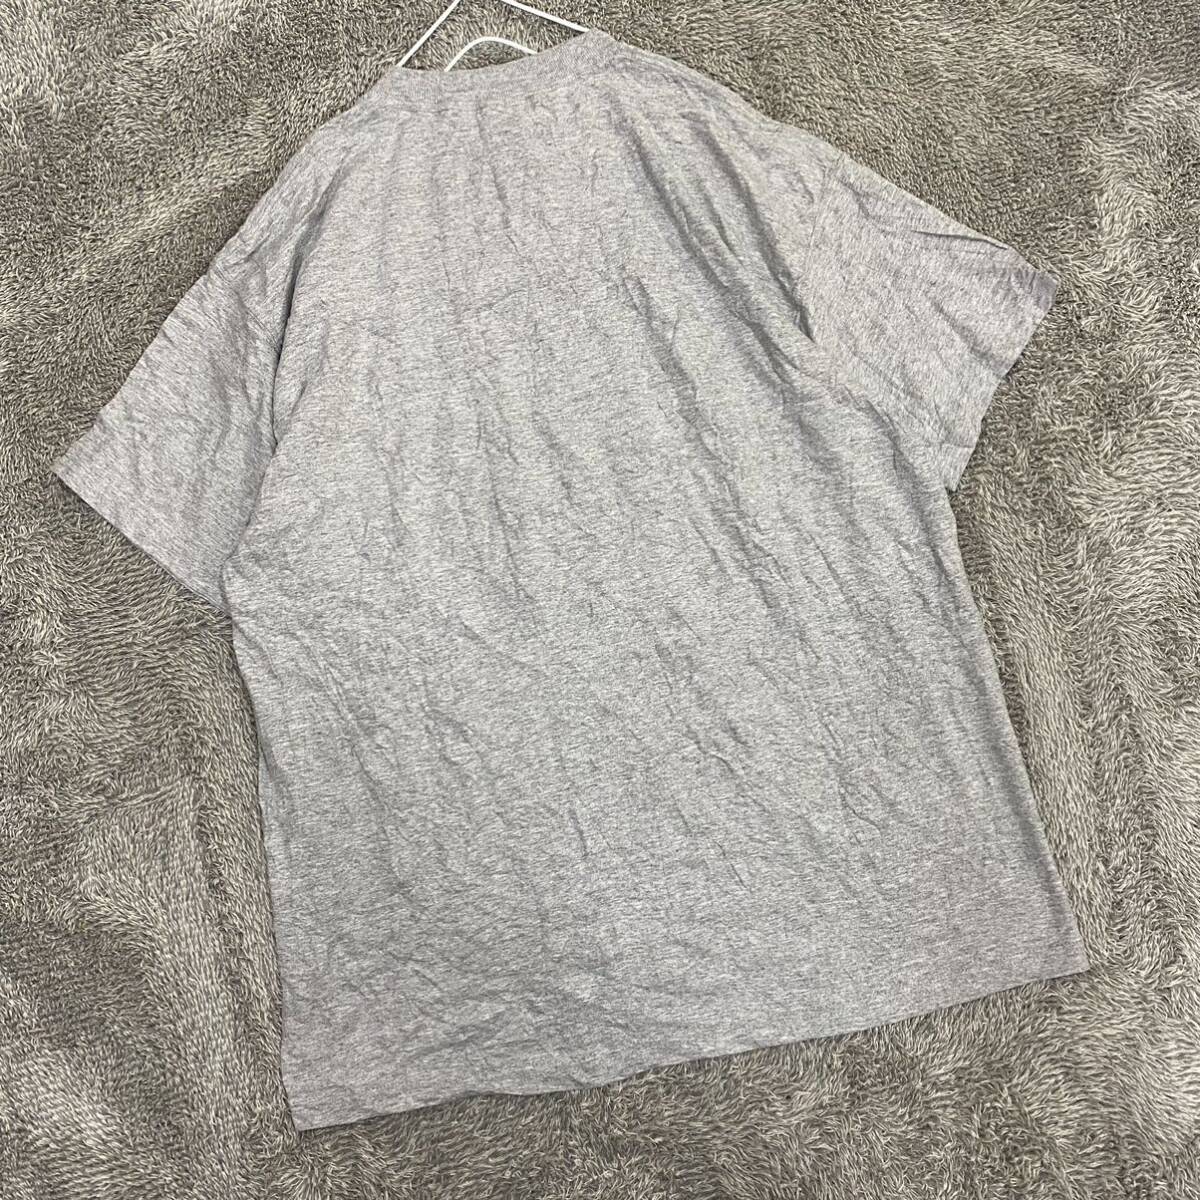 FRUIT OF THE LOOM フルーツオブザルーム Tシャツ 半袖カットソー サイズXL グレー 灰色 メンズ トップス 最落なし （G19）の画像2